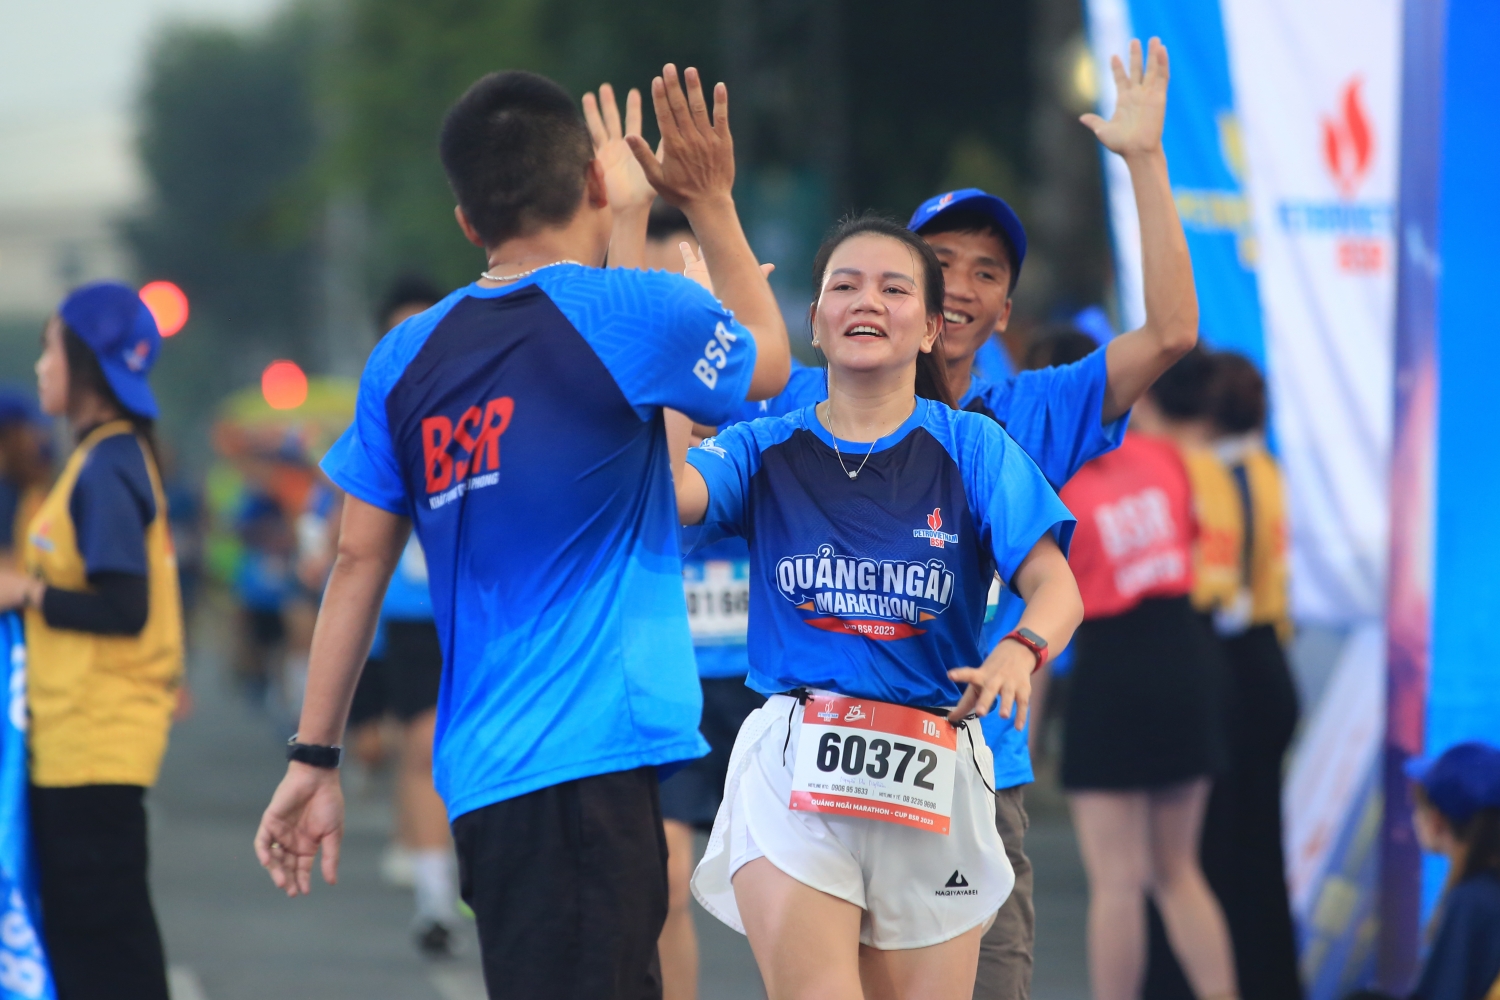 Hơn 2.000 VĐV hoàn thành đường chạy tại Marathon Quảng Ngãi  - CUP BSR